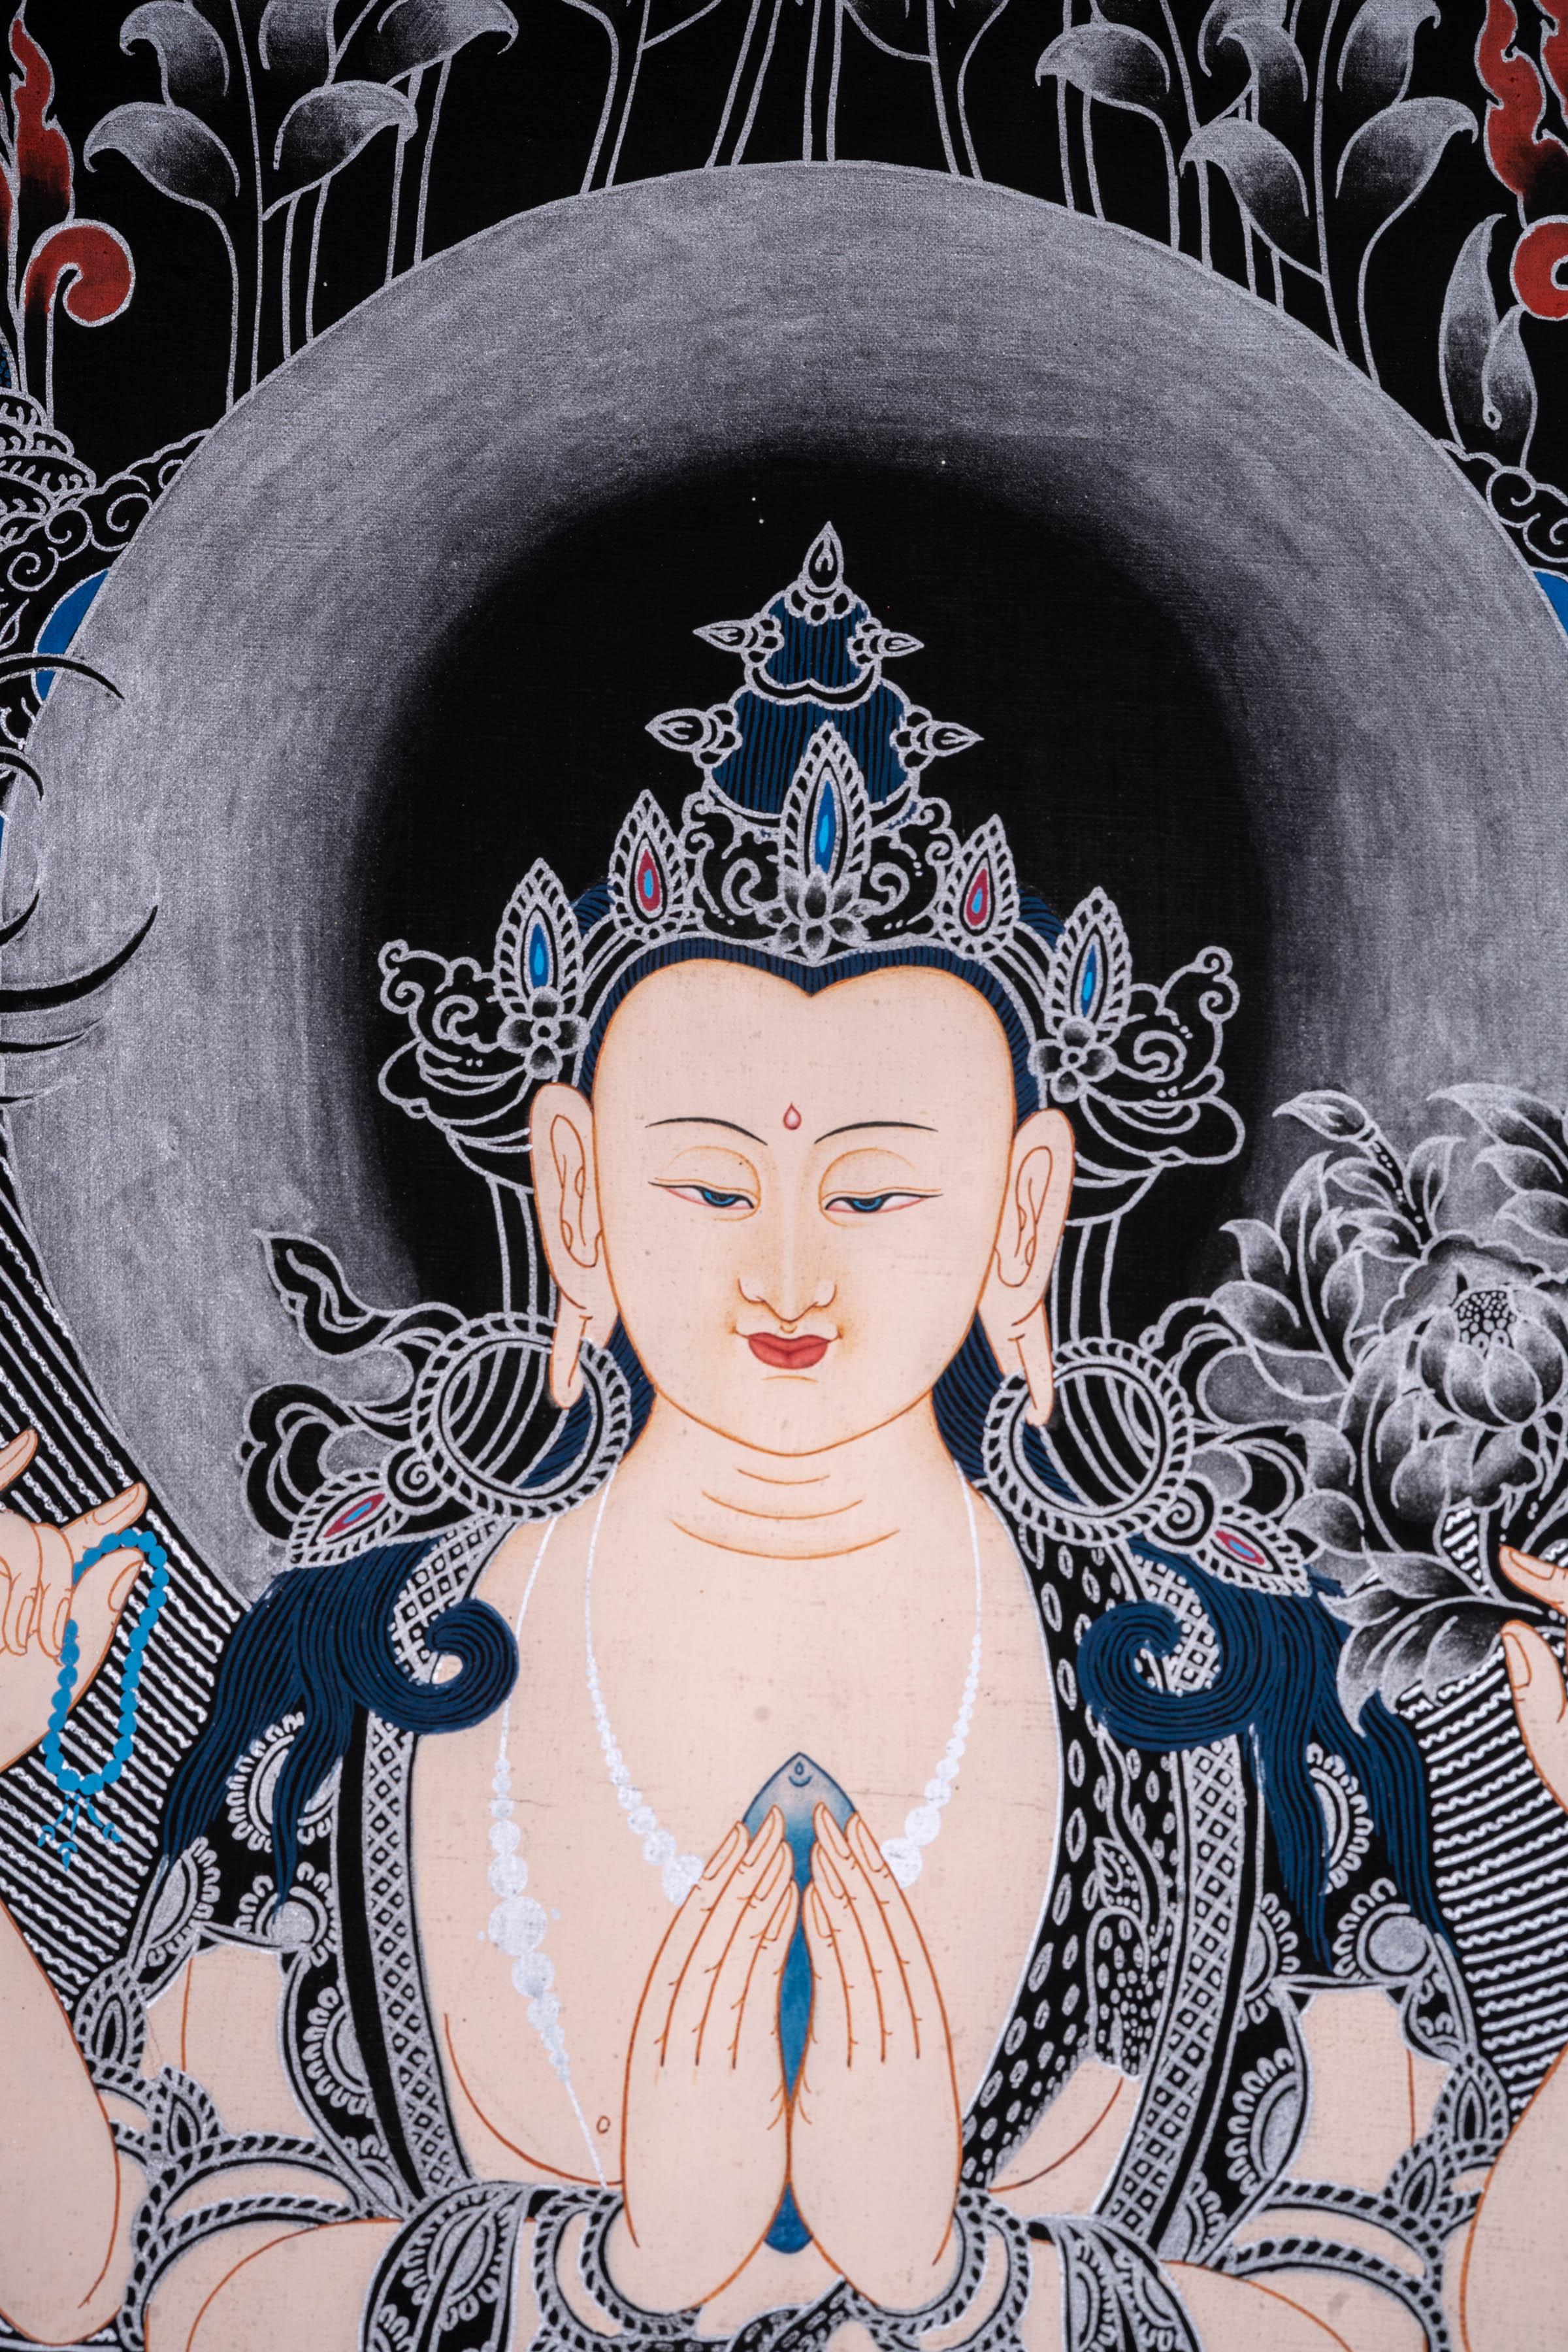 Chenrezig Thangka Painting - Himalayas Shop